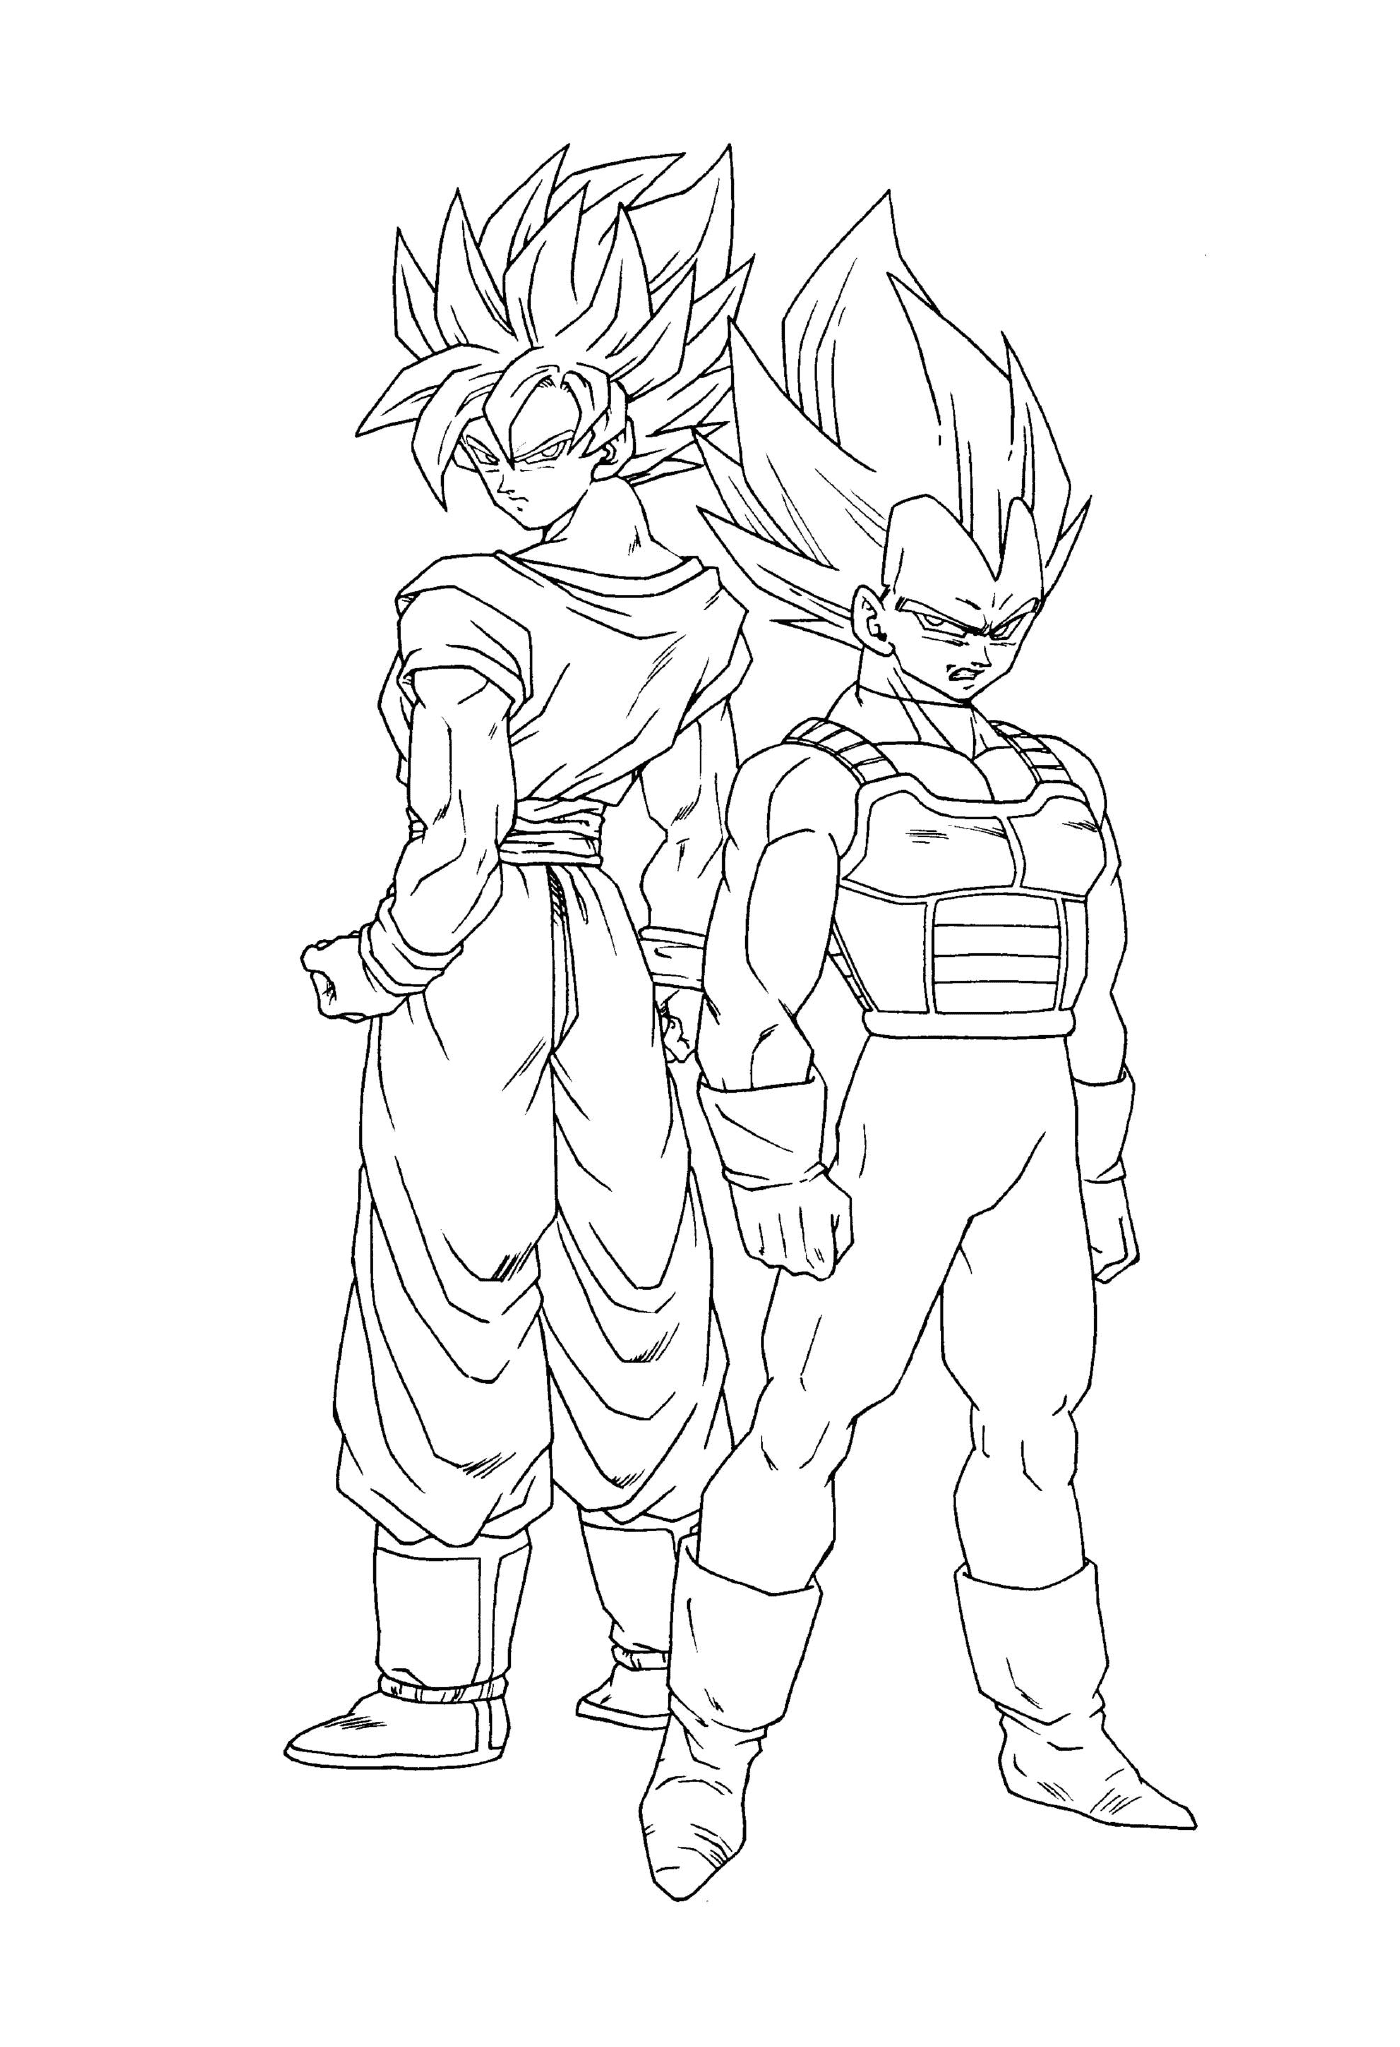  Goku e seu irmão Vegeta de Dragon Ball Z 